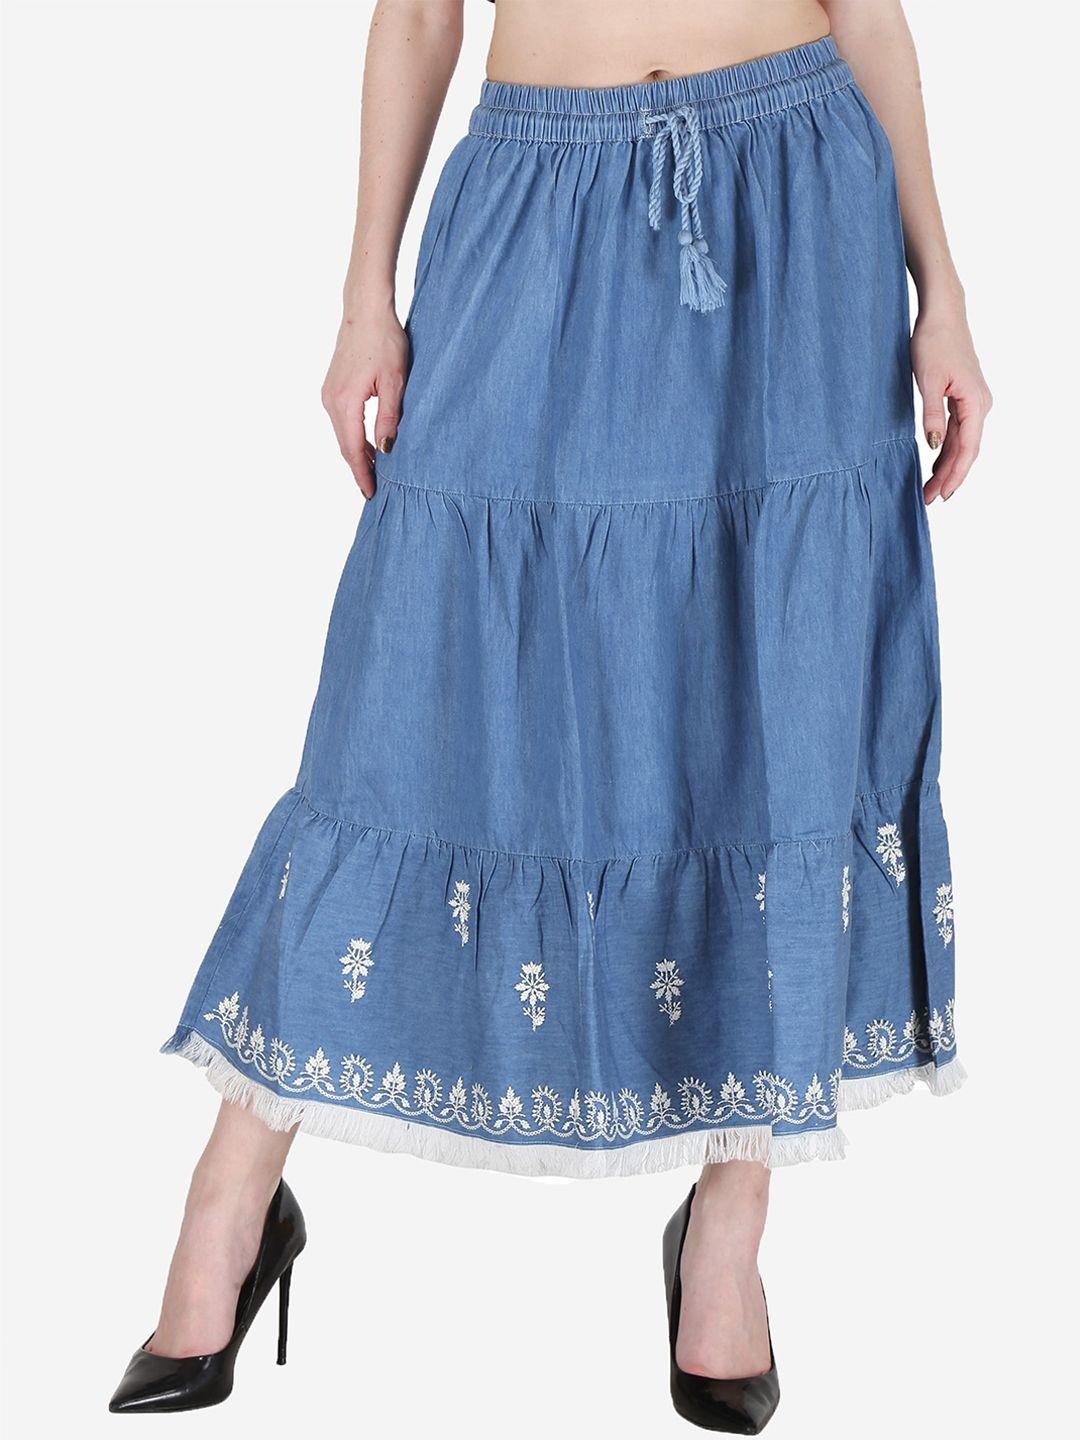 sumavi-fashion-border-embroidered-flared-midi-denim-skirt